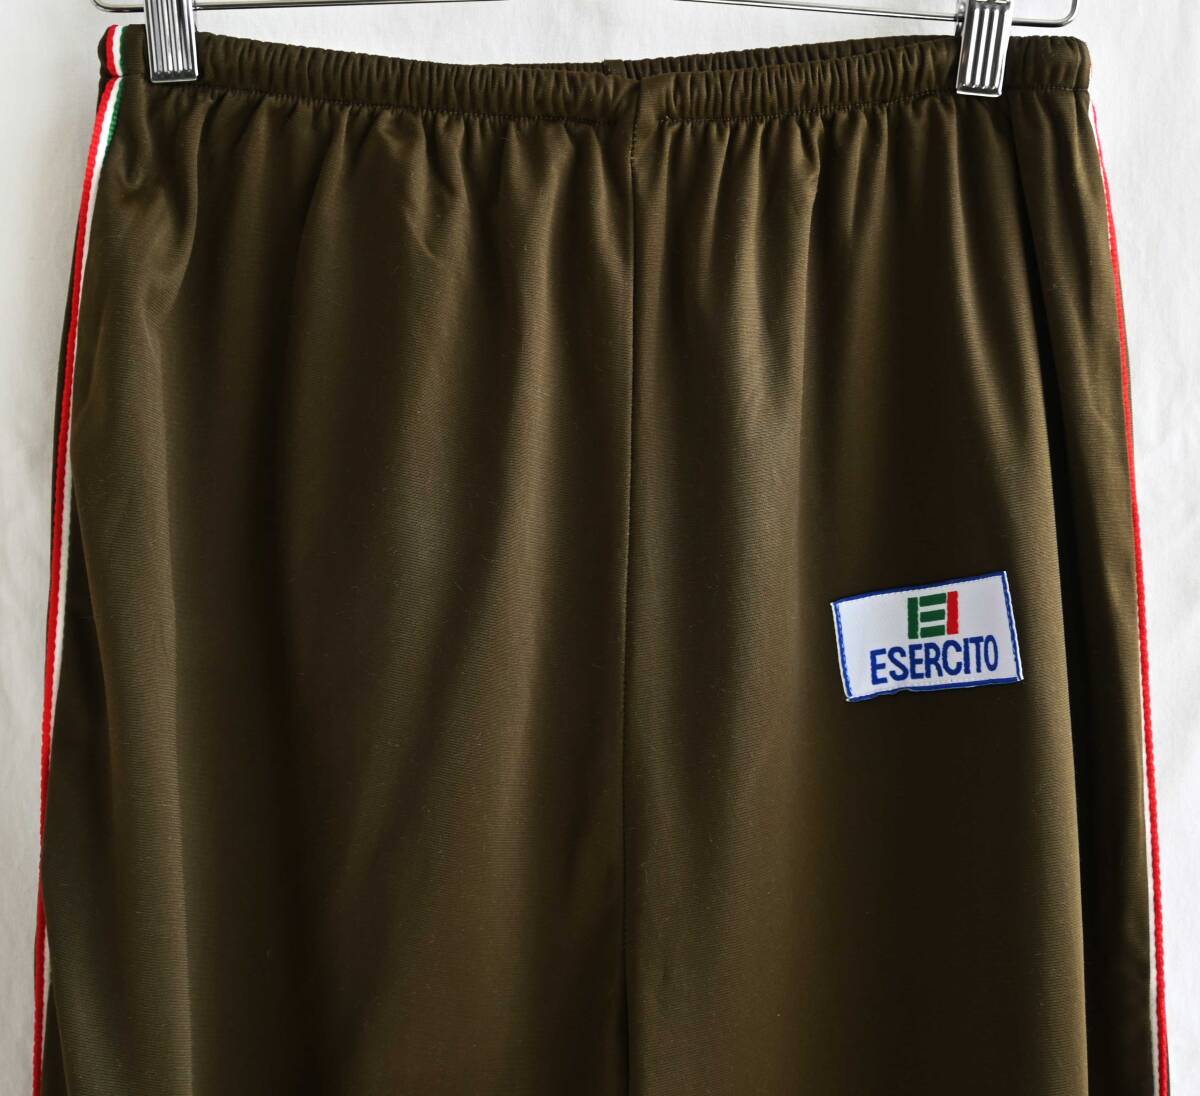  быстрое решение [90\'s Vintage / Италия армия ]ESERCITO тренировочные штаны /XL/( свободный размер )/ Brown оливковый / милитари / сброшенный товар (q-2403-2XL-1)